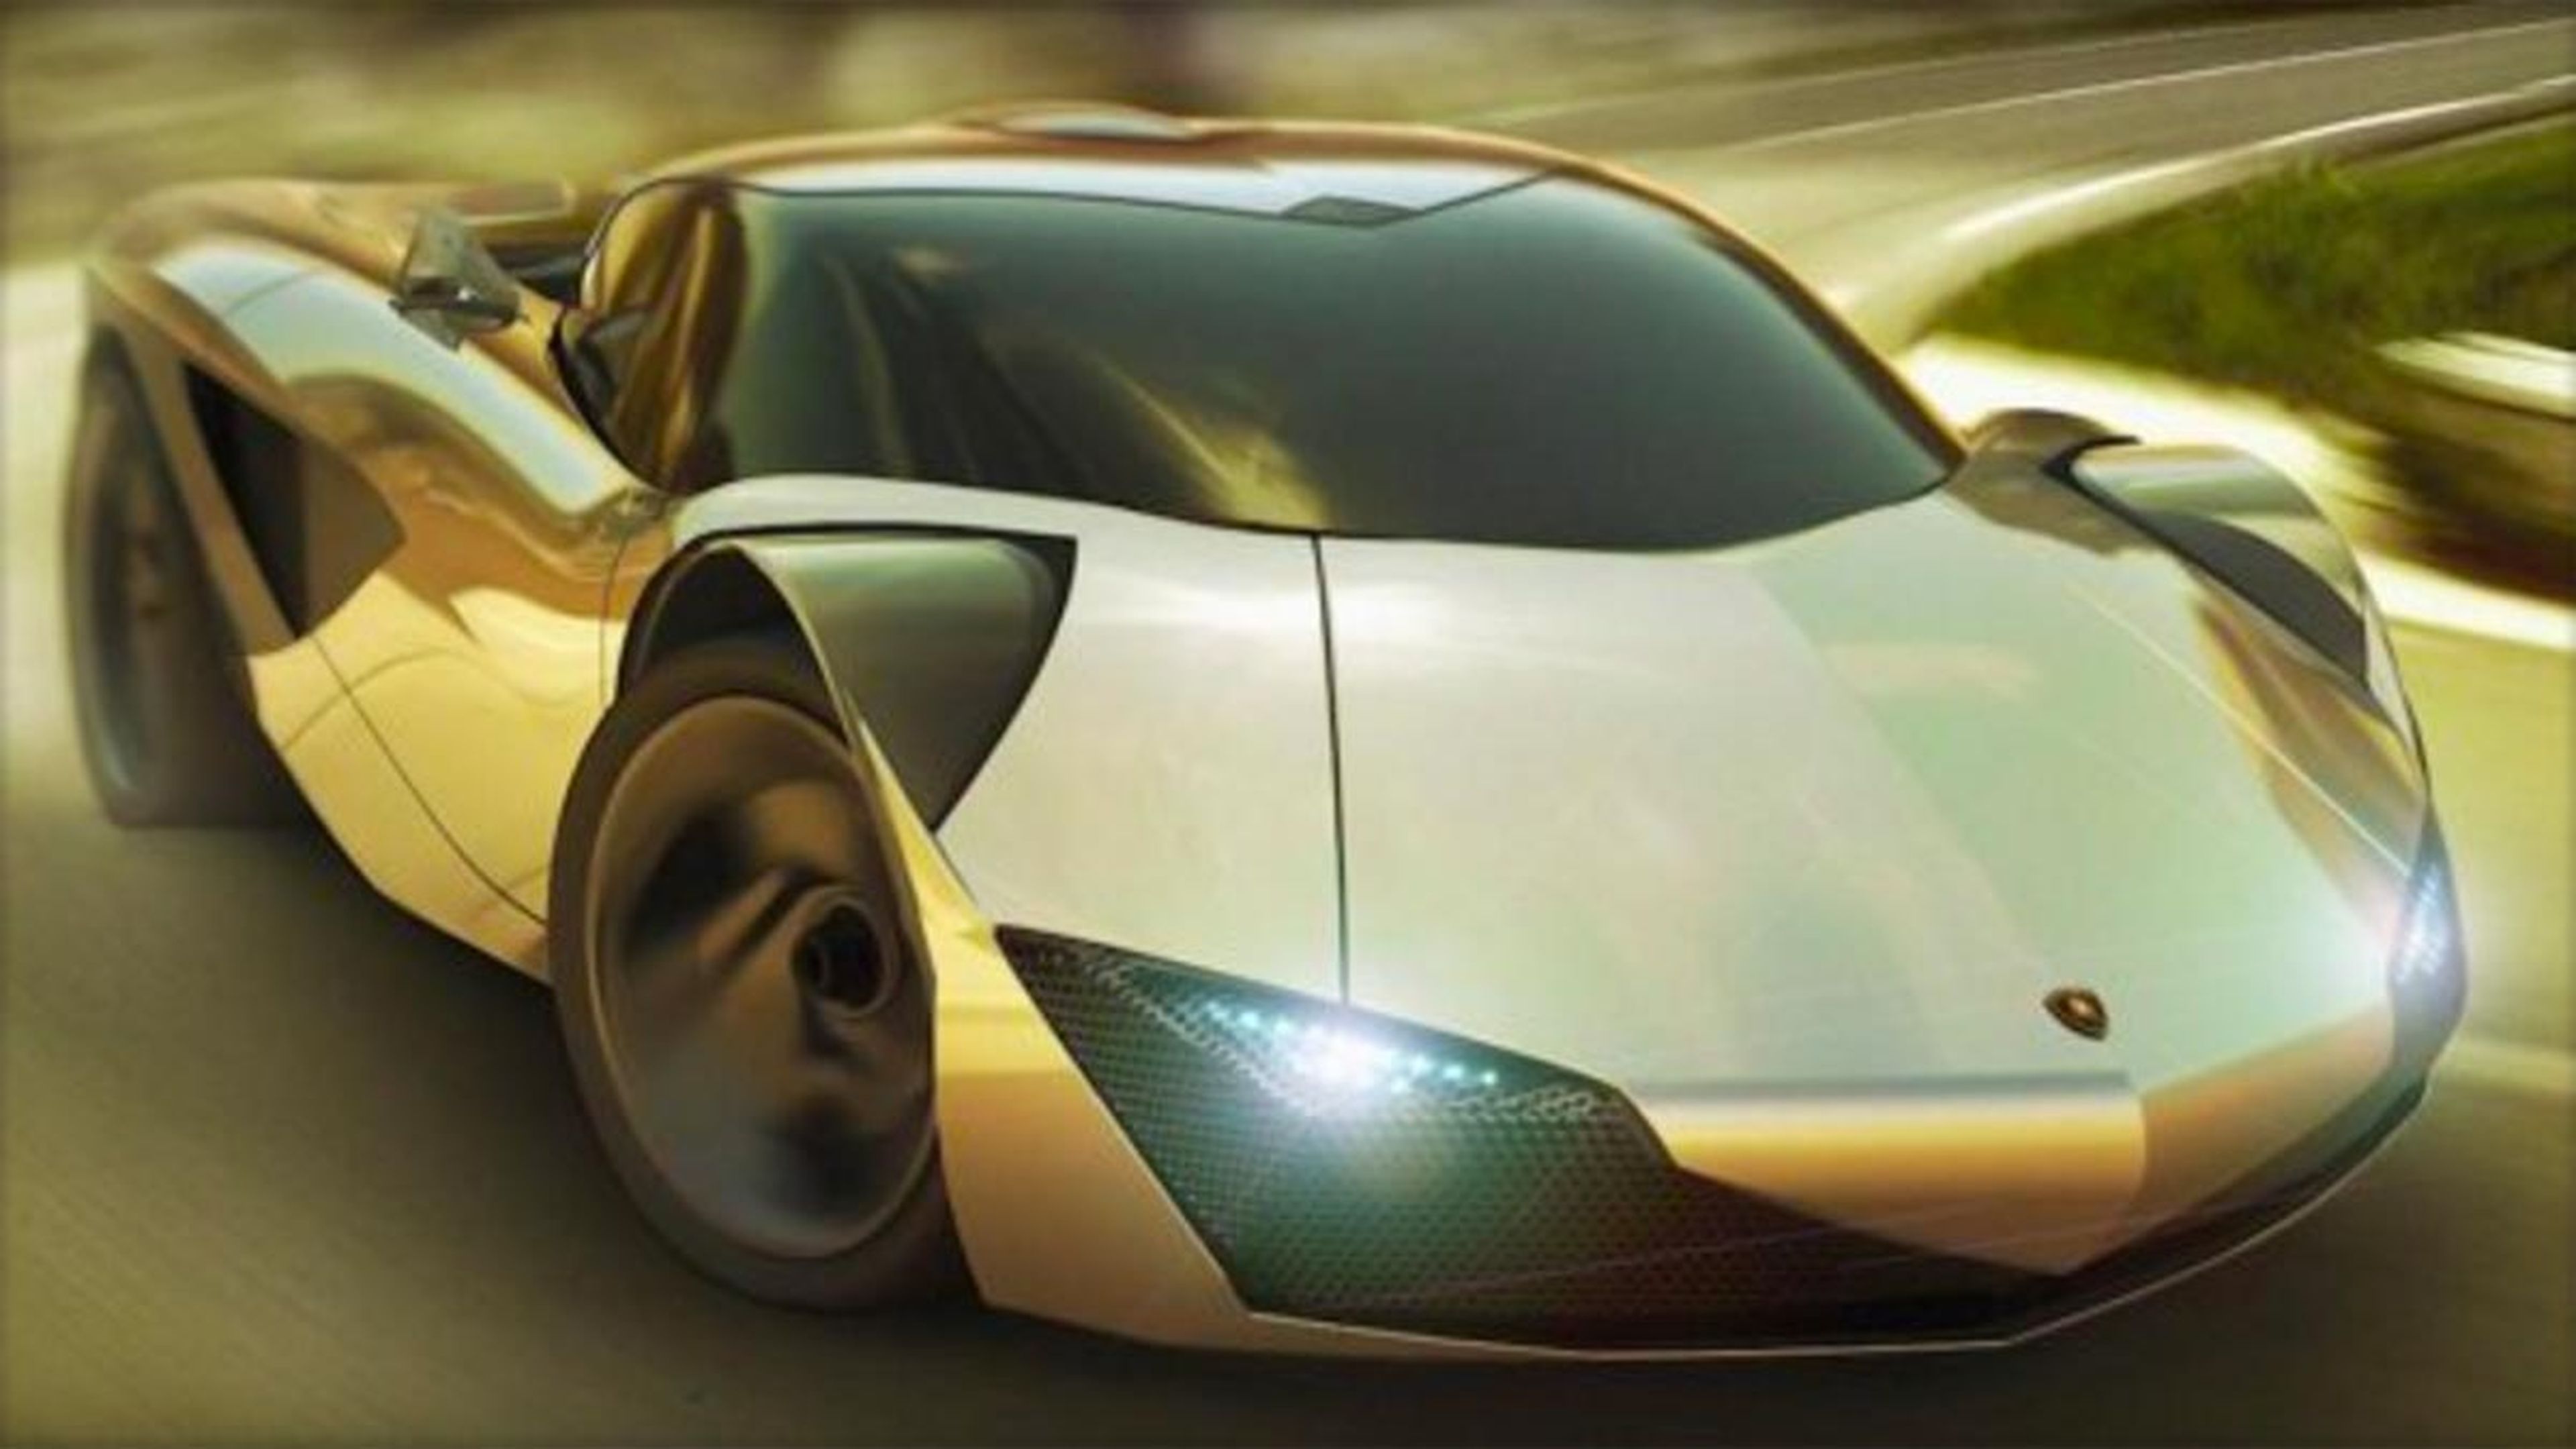 Lamborghini eléctrico